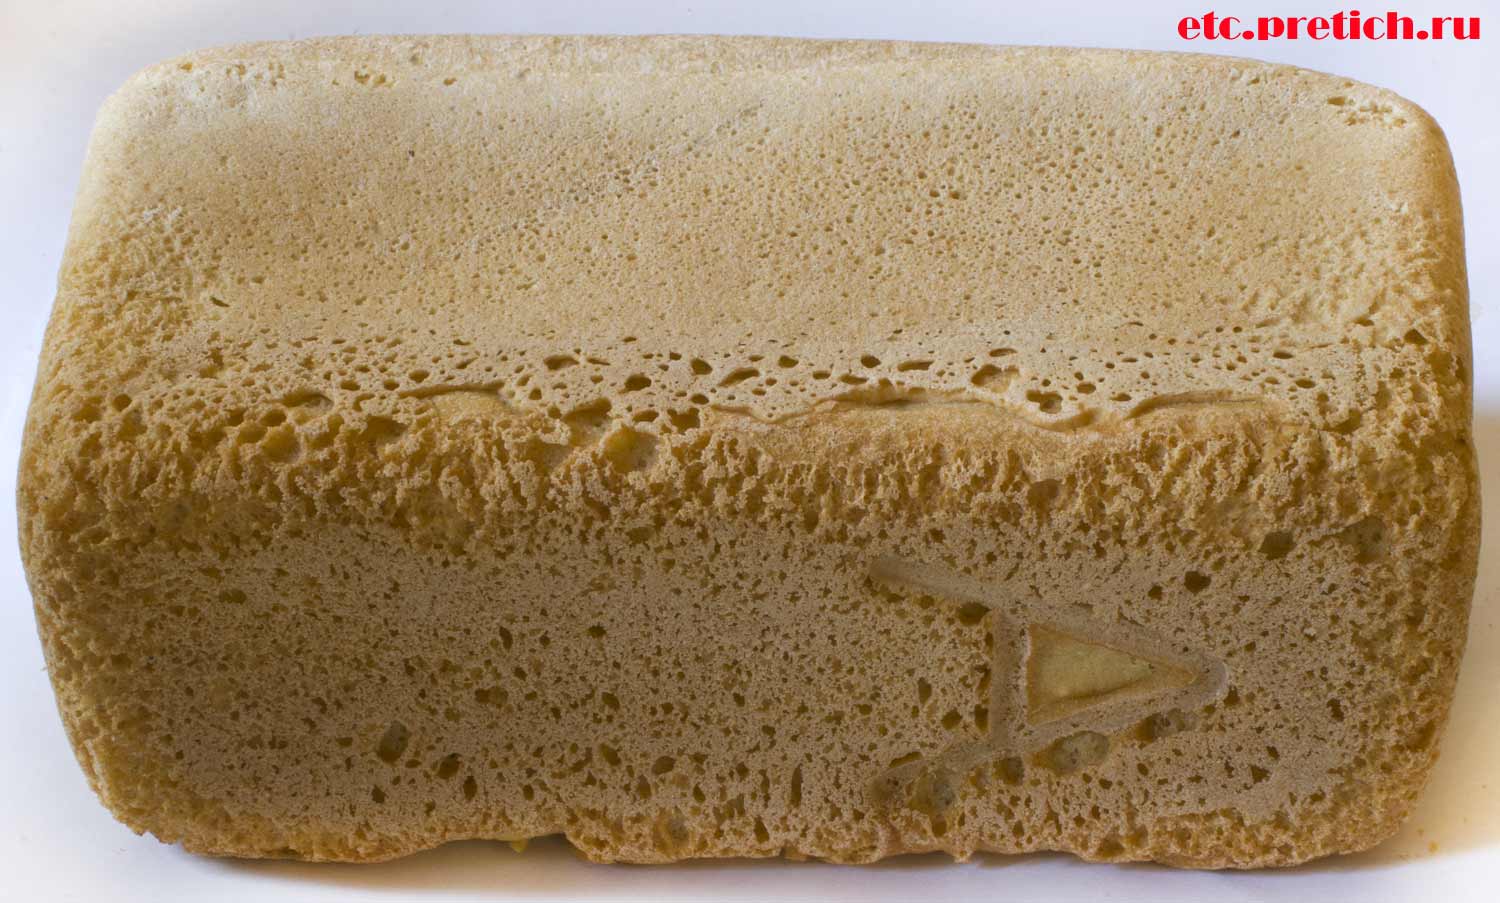 Буква А на булке хлеба Аксай нан, социальный формовой